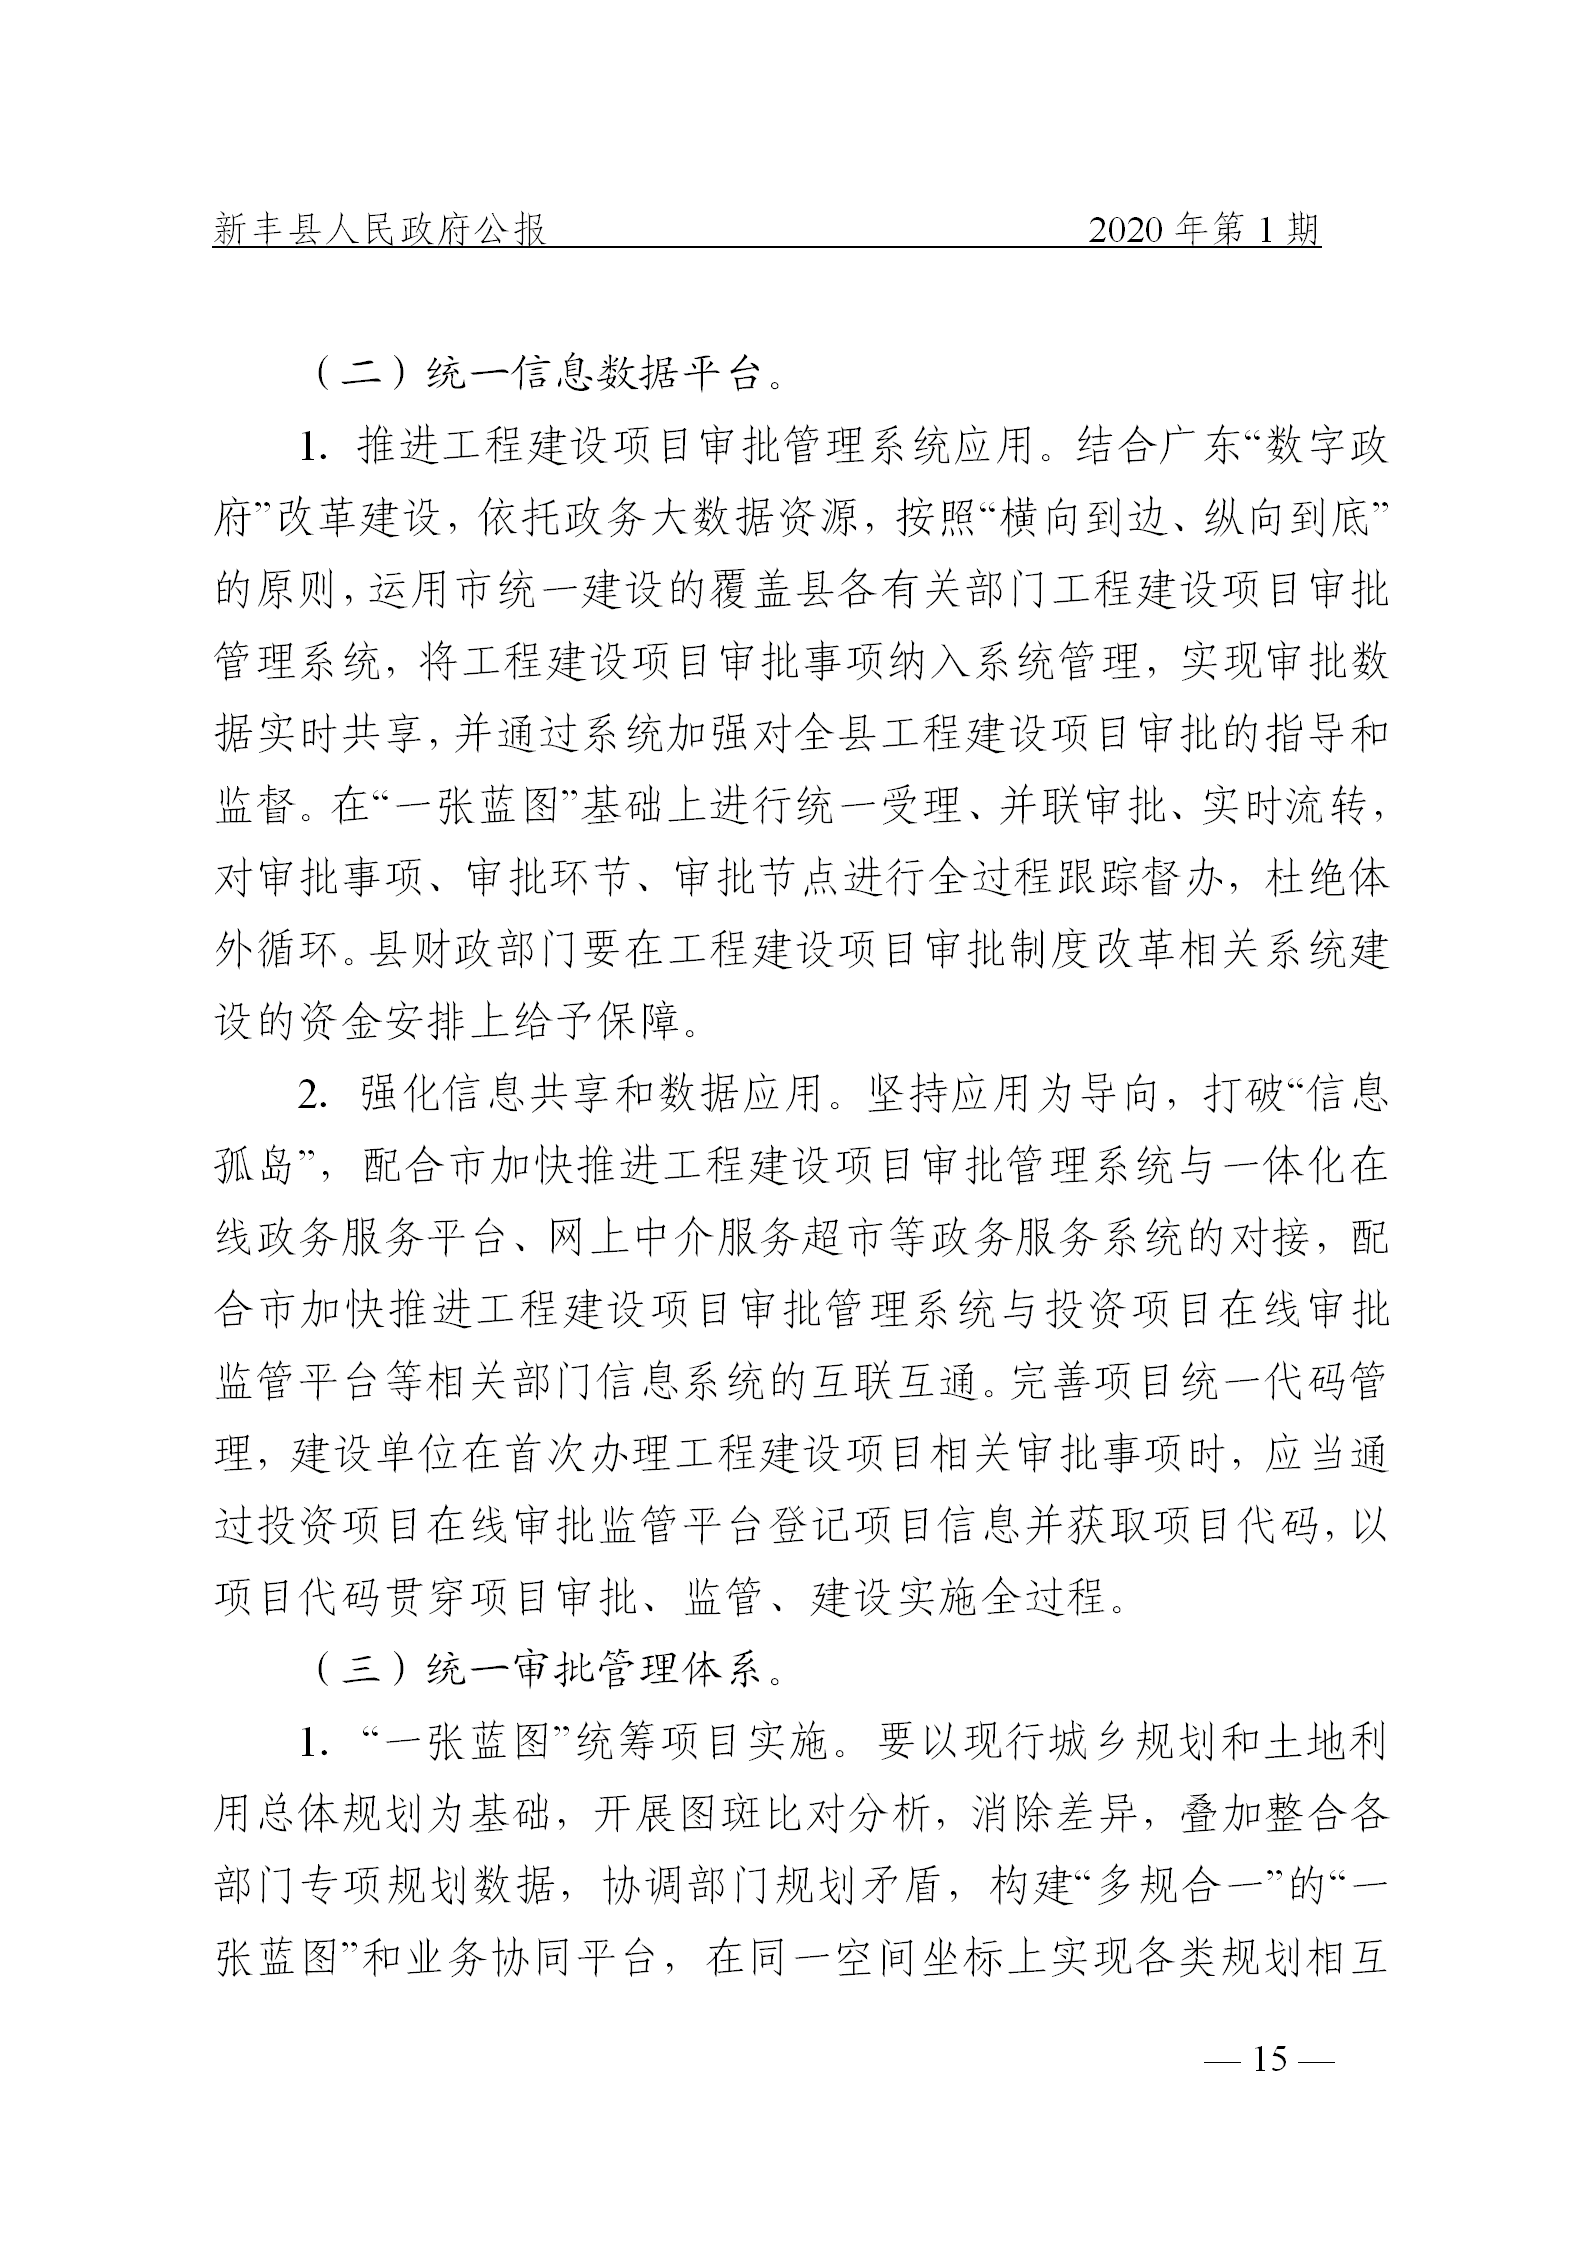 《新丰县人民政府公报》2020年第1期(1)_15.png